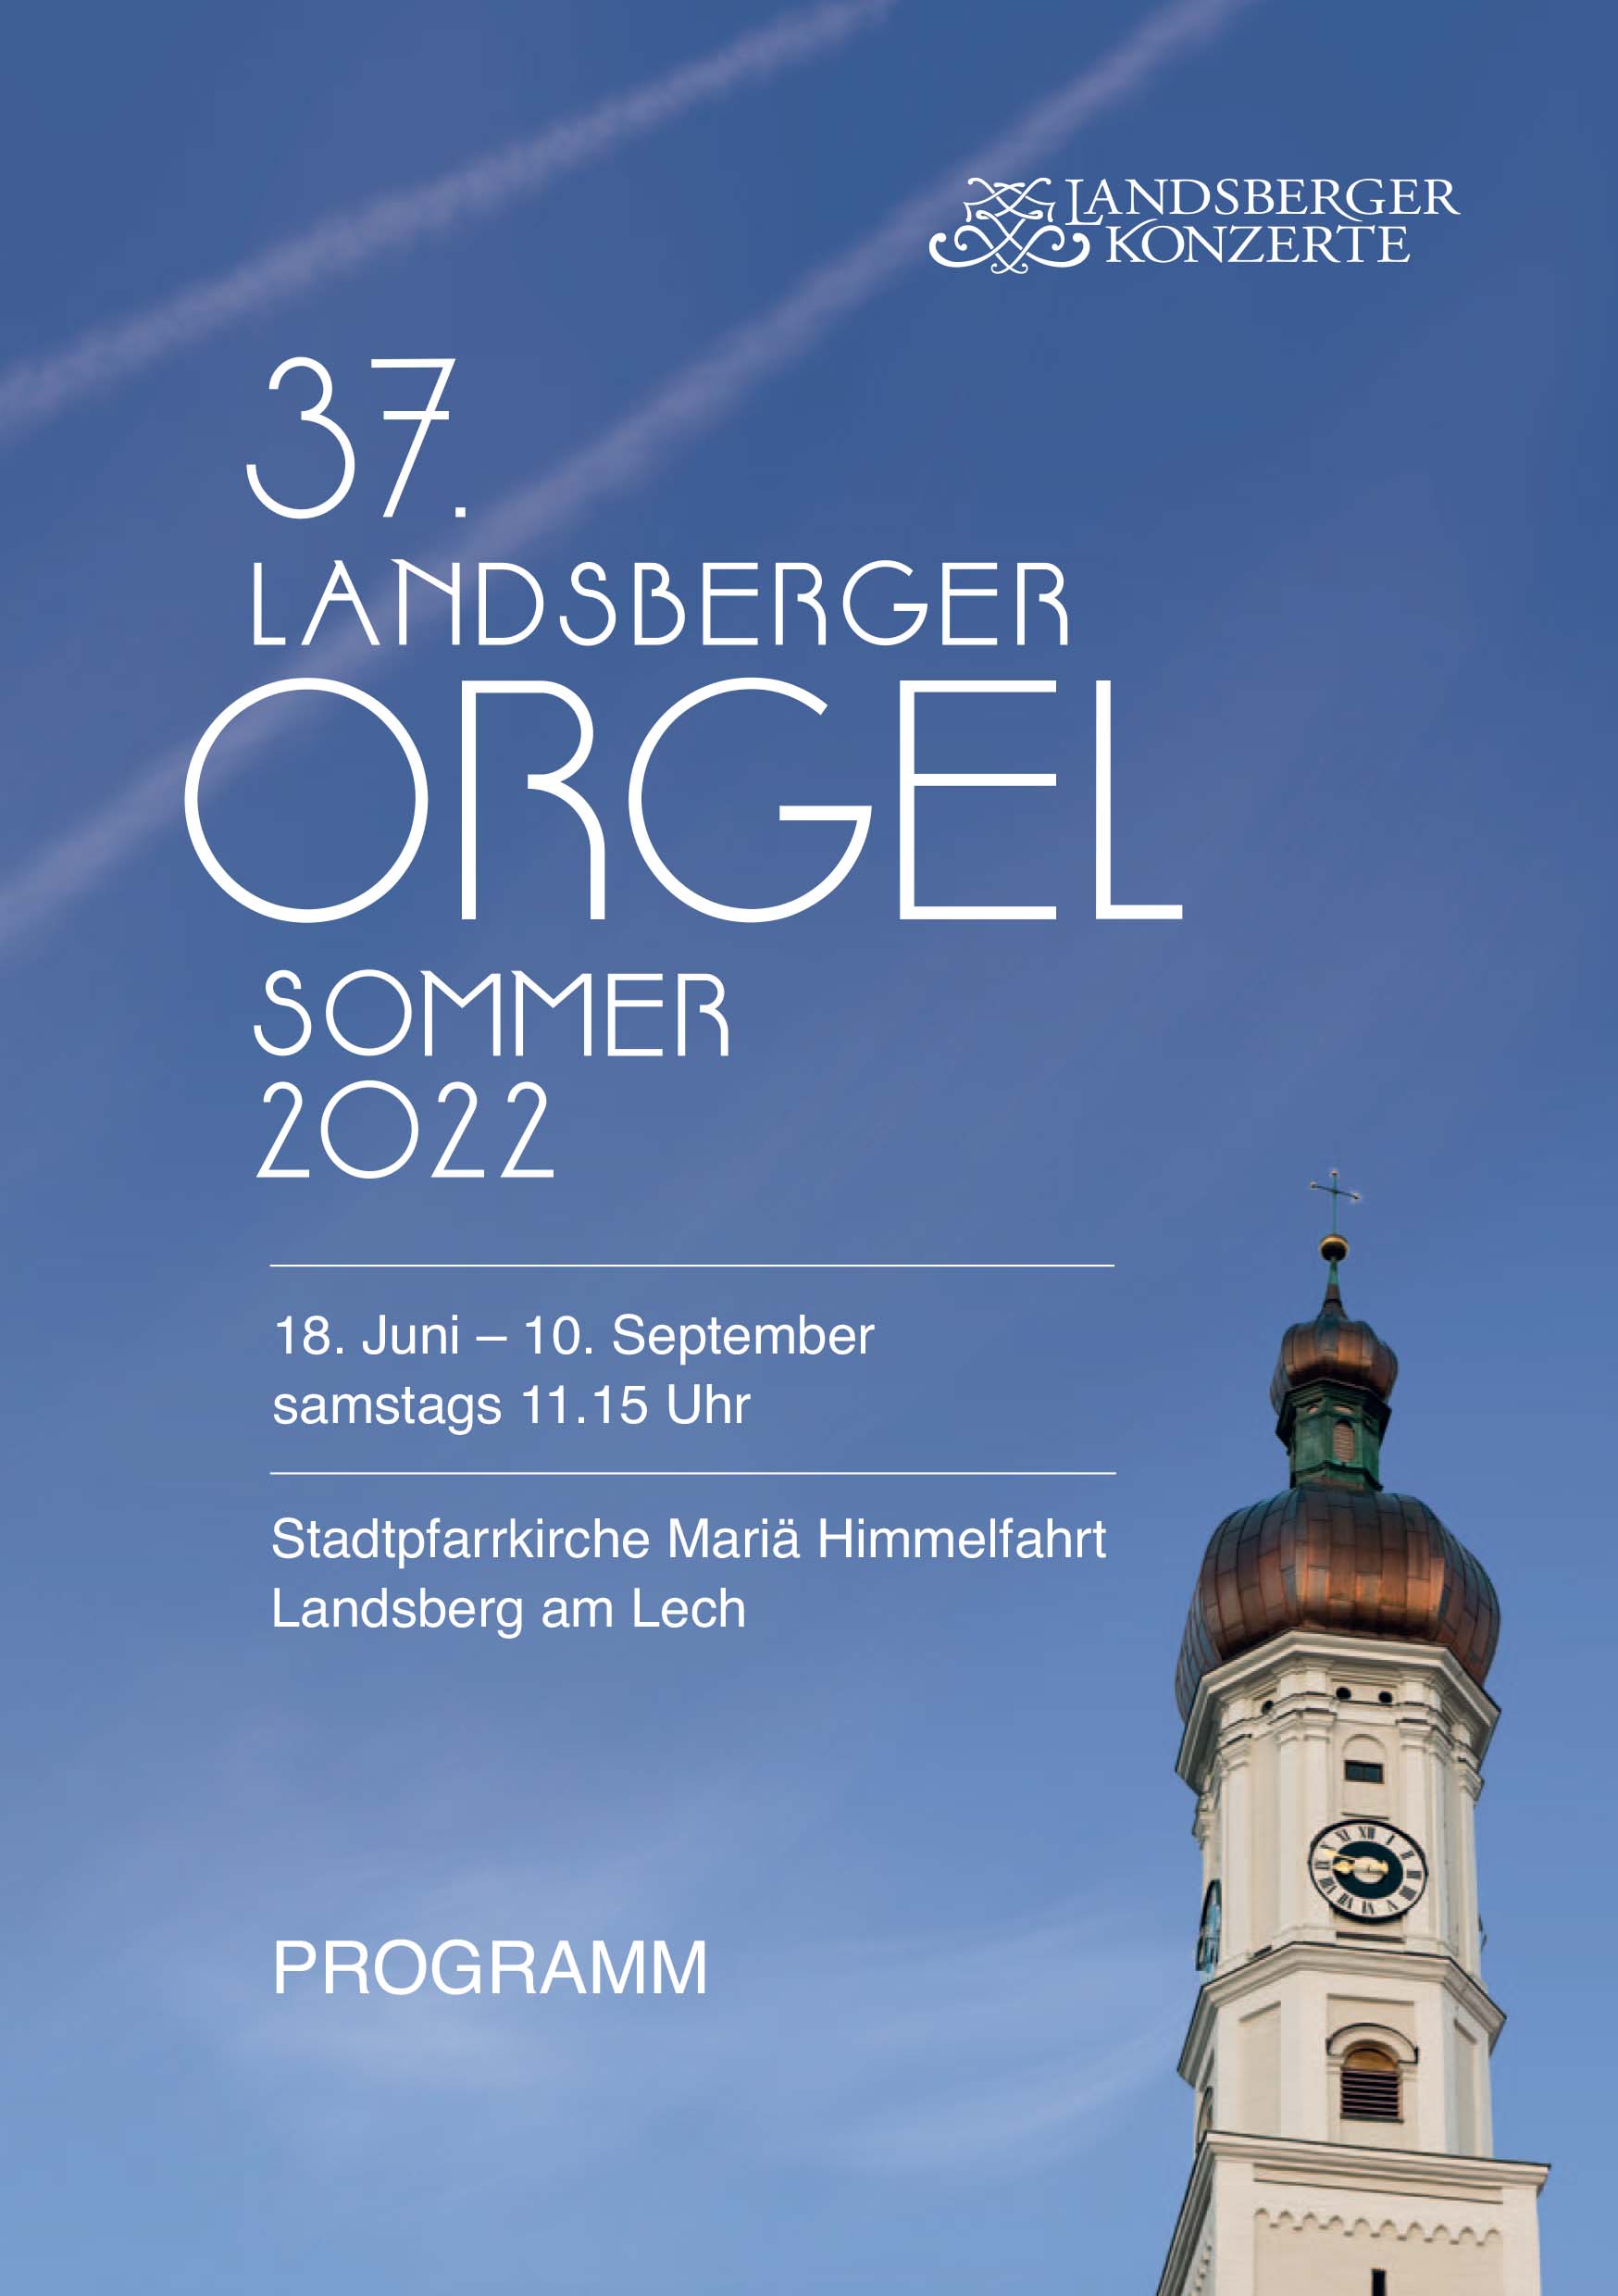 Concerto “37. Landsberger Olgelsommer”. Landsberg am Lech (Germania) 18.06.2022